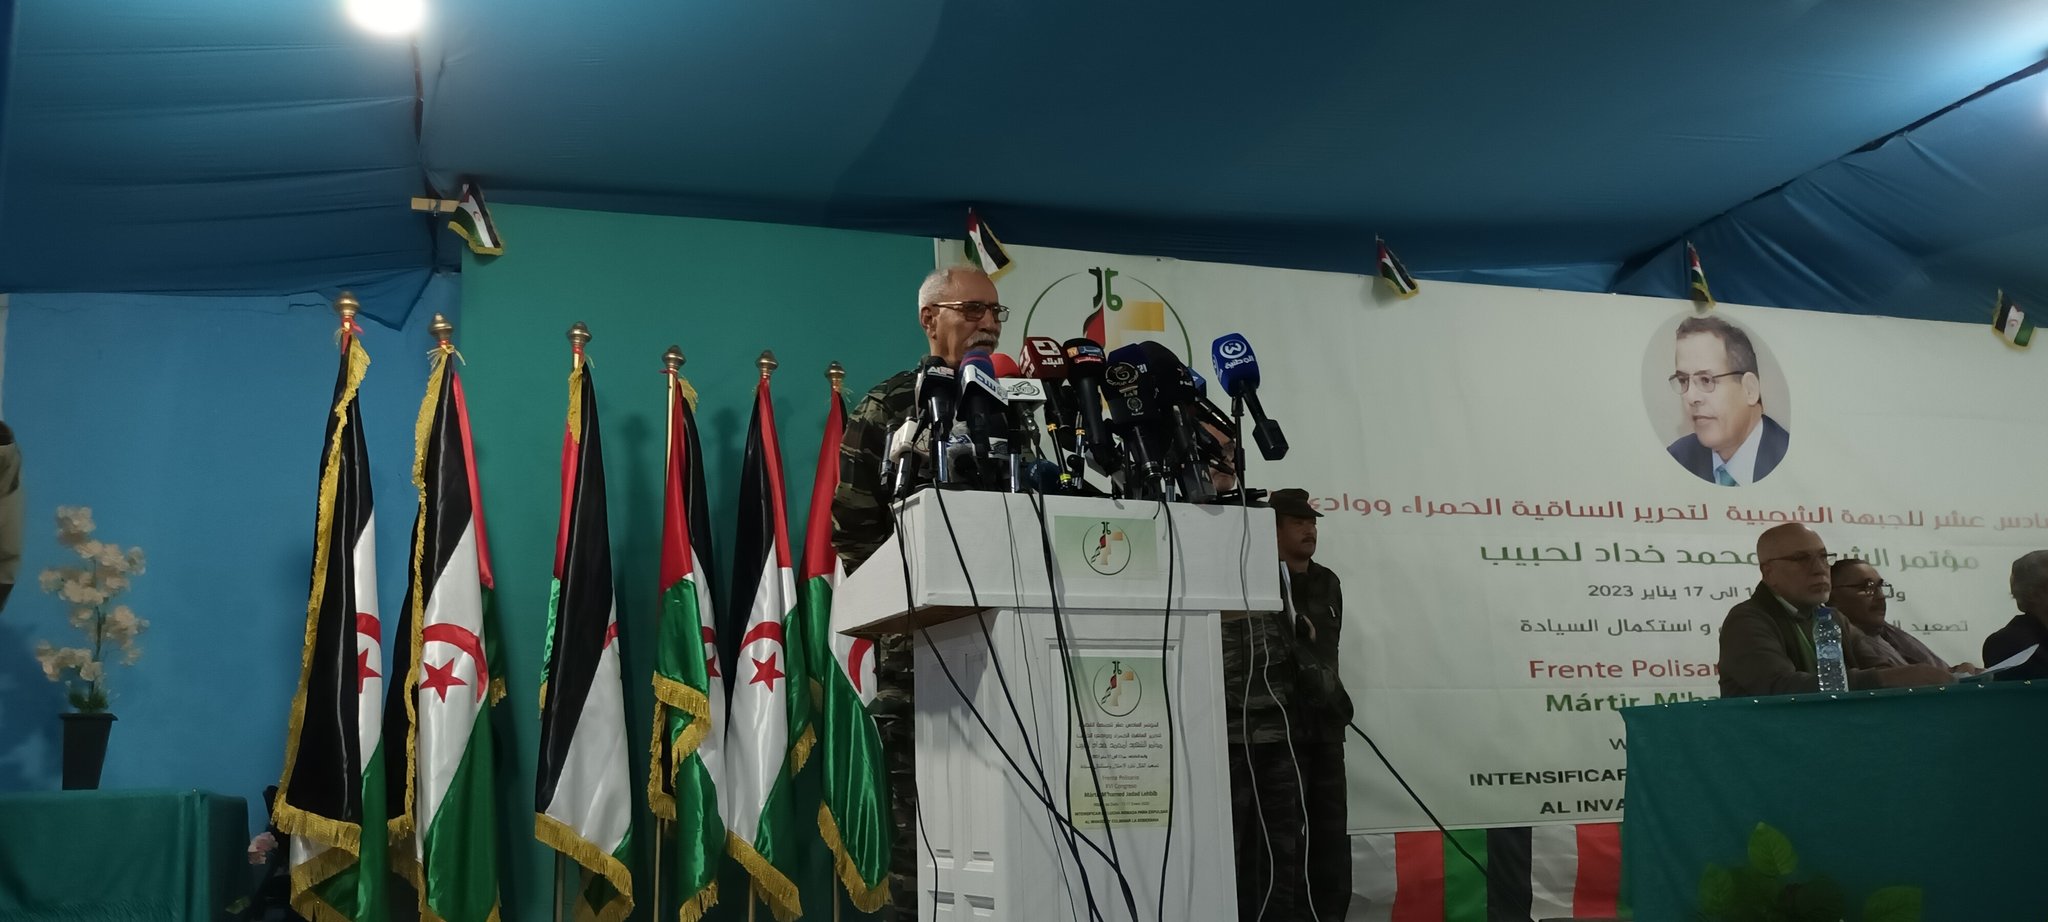 COMUNICADO | ISB saluda al XVI Congreso del Frente Polisario